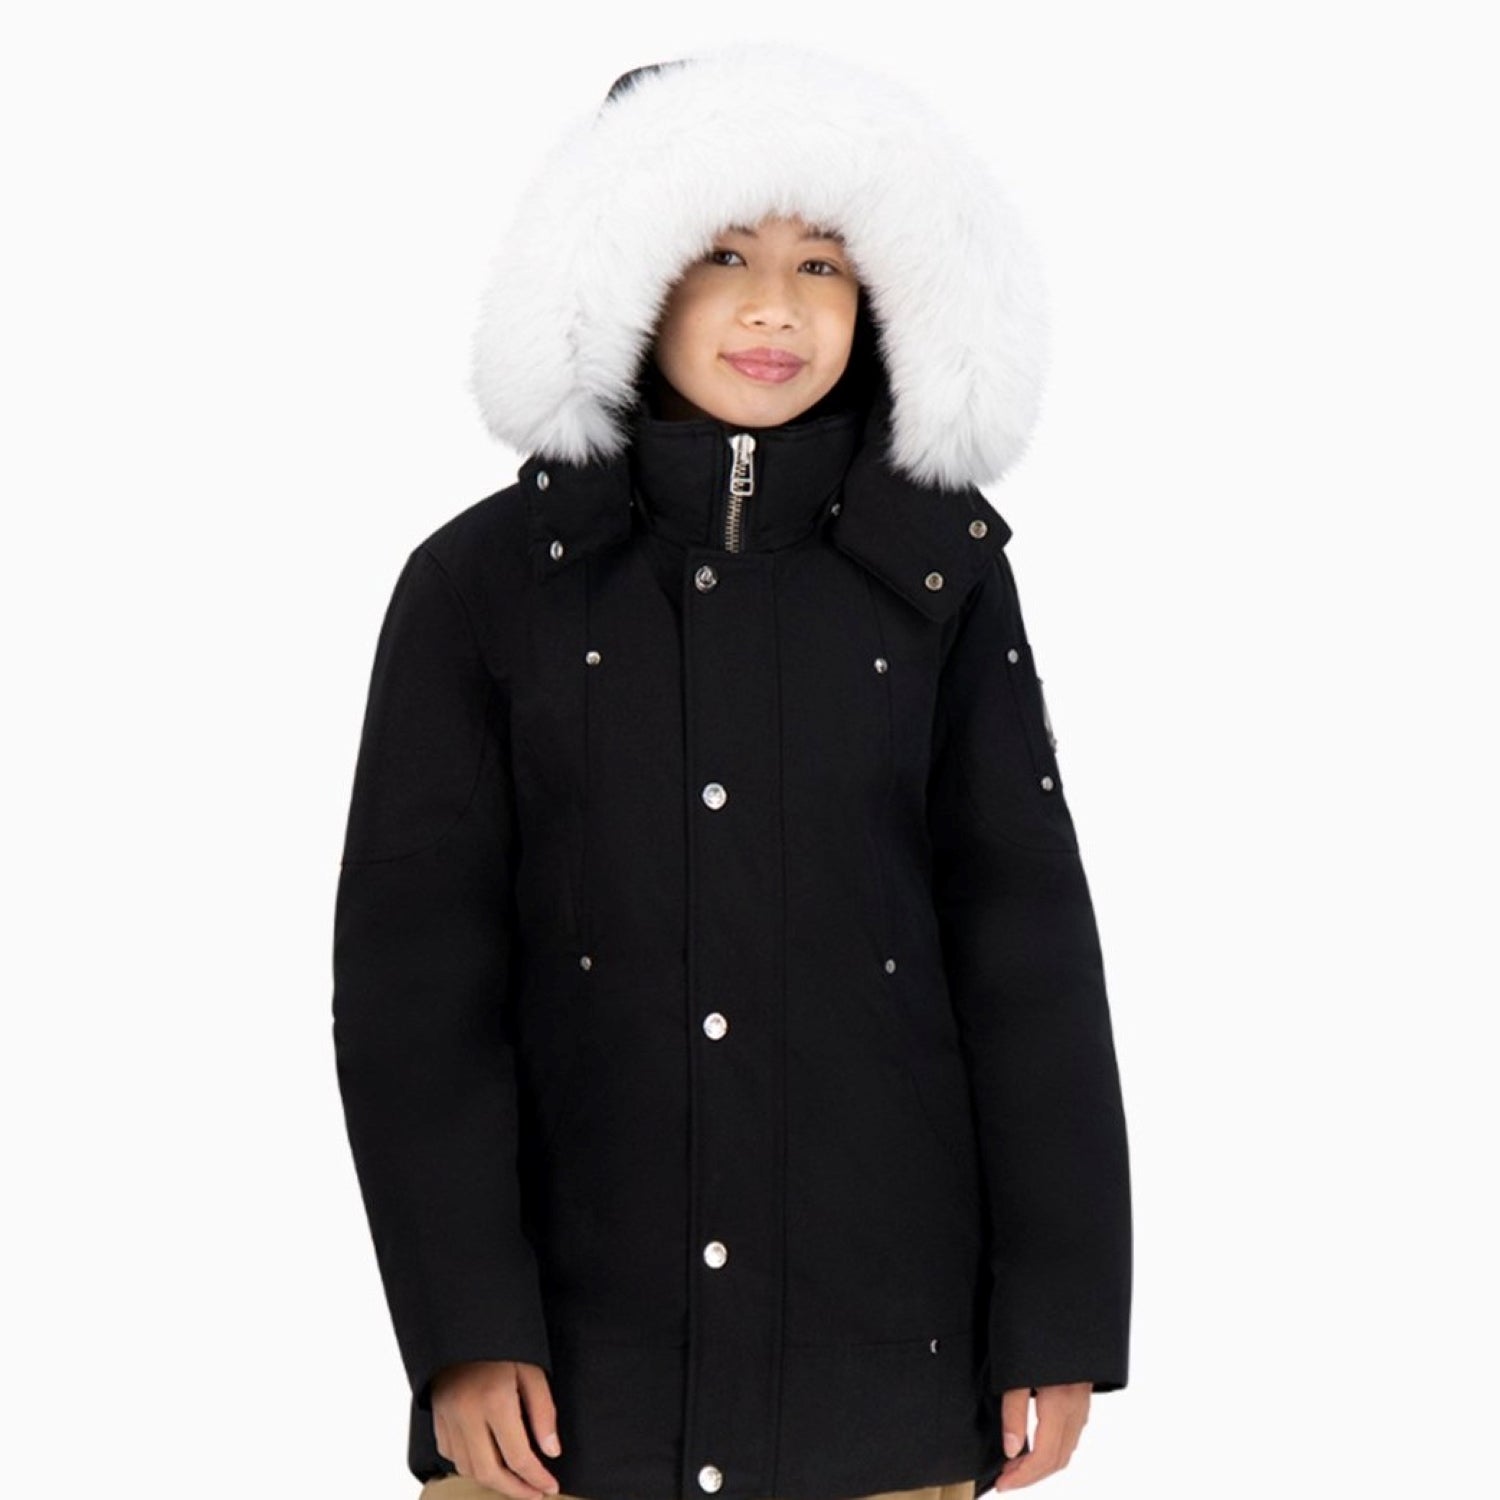 MOOSE KNUCKLES | Kid's Parka Puffer Jacket - Color: Black / Fur - Kids Premium Clothing -